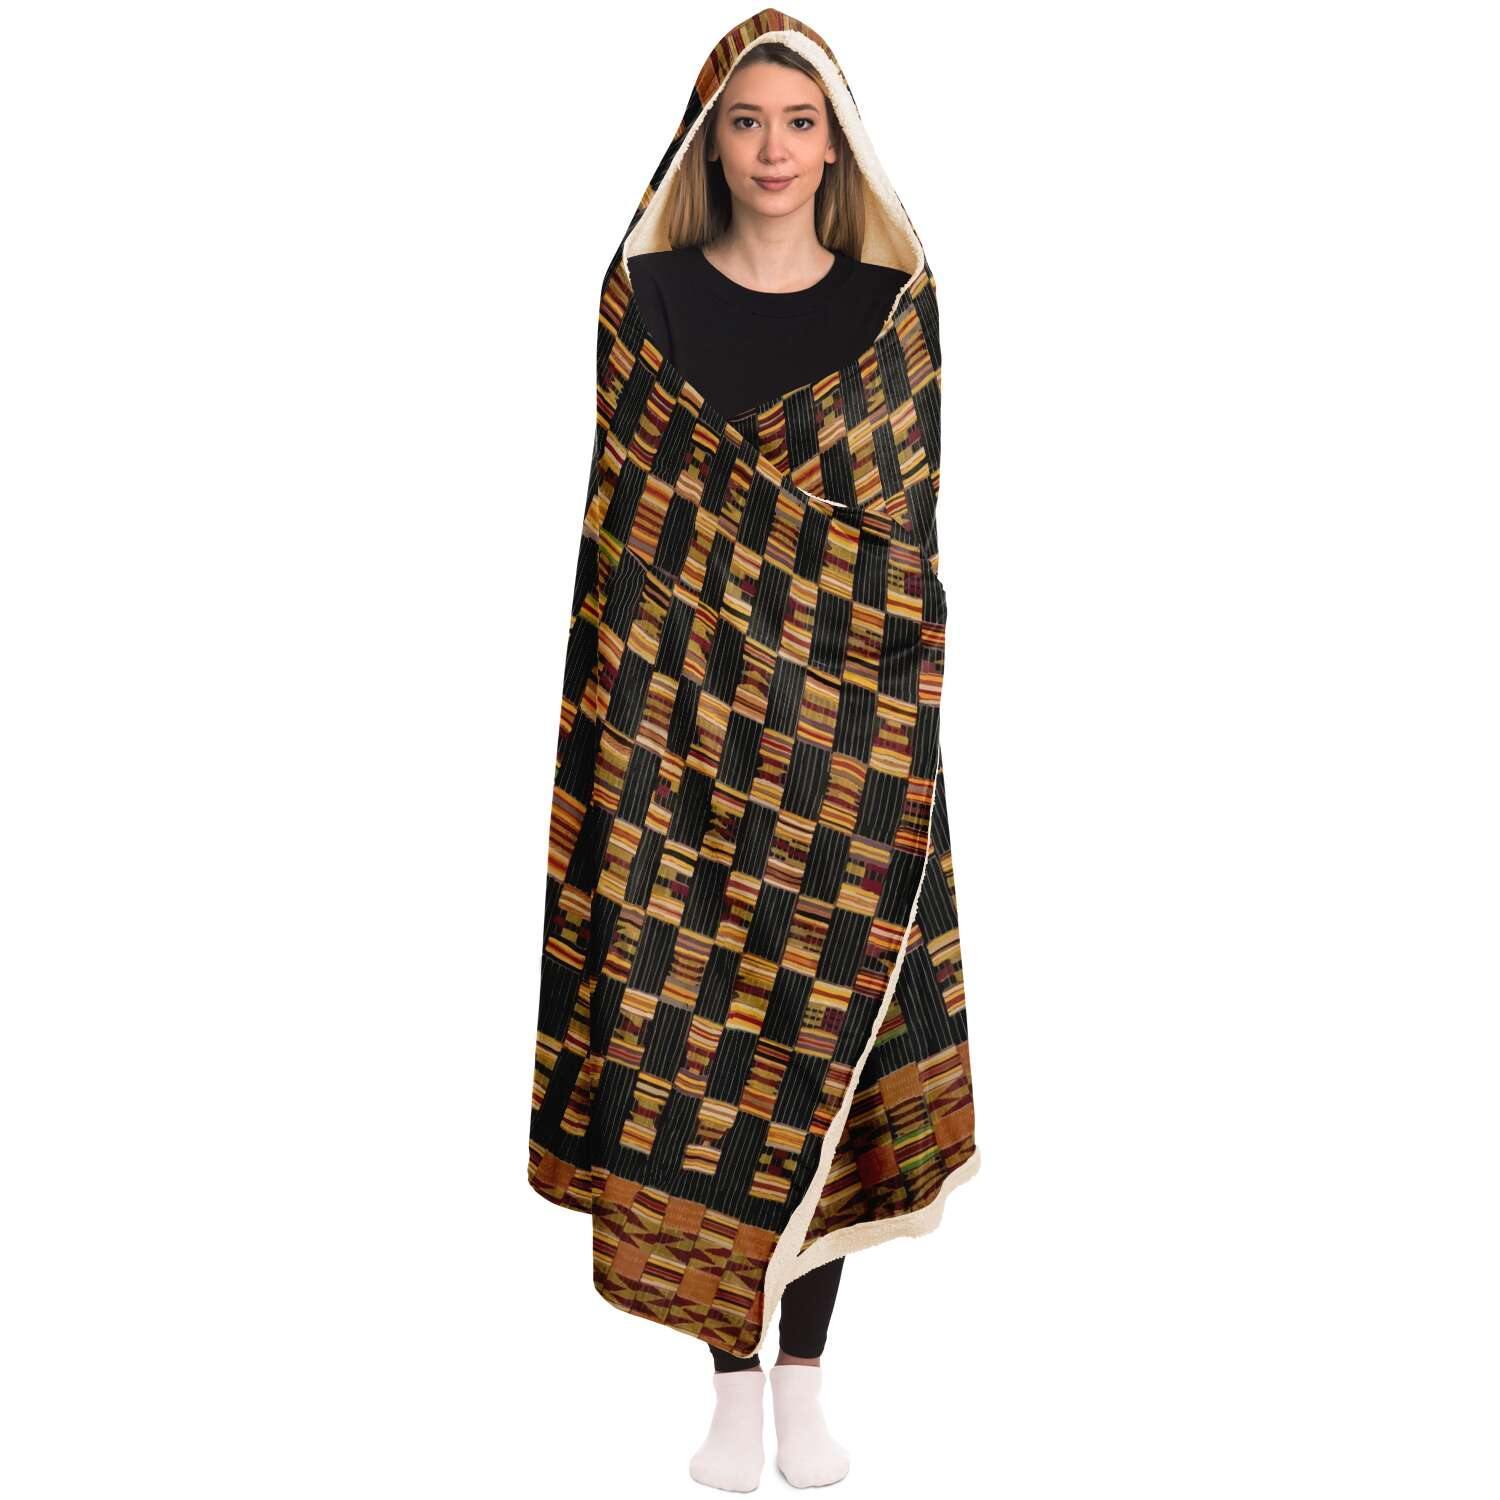 Hooded Blanket - AOP Asante Culture Inspired Hooded Blanket